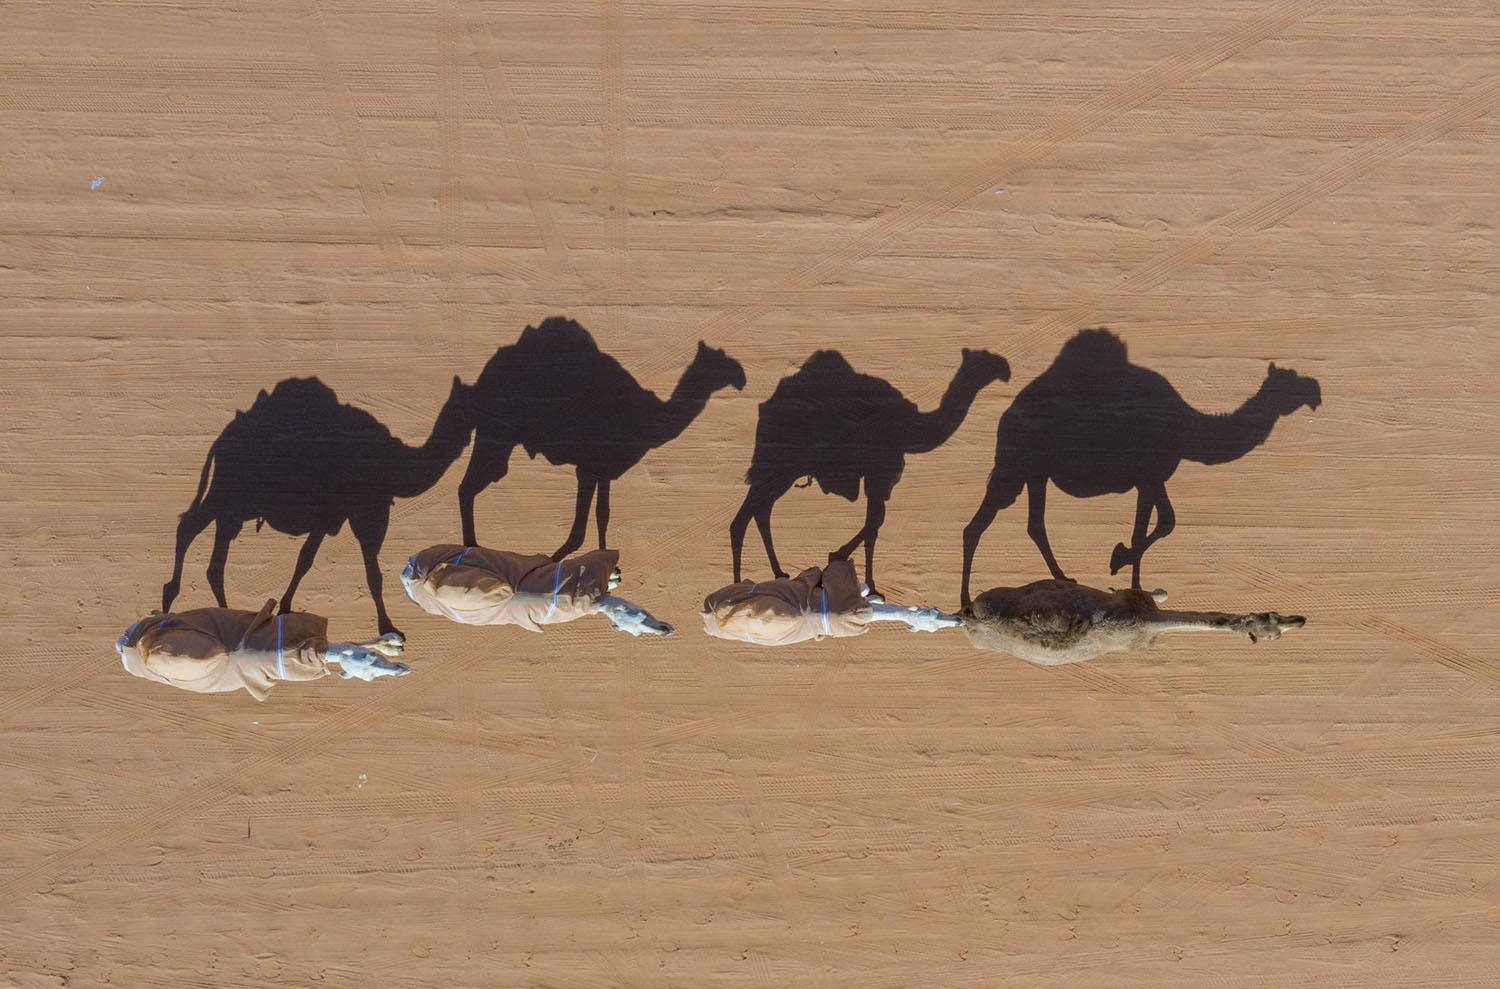 фотография с верблюдами и белыми пятнами